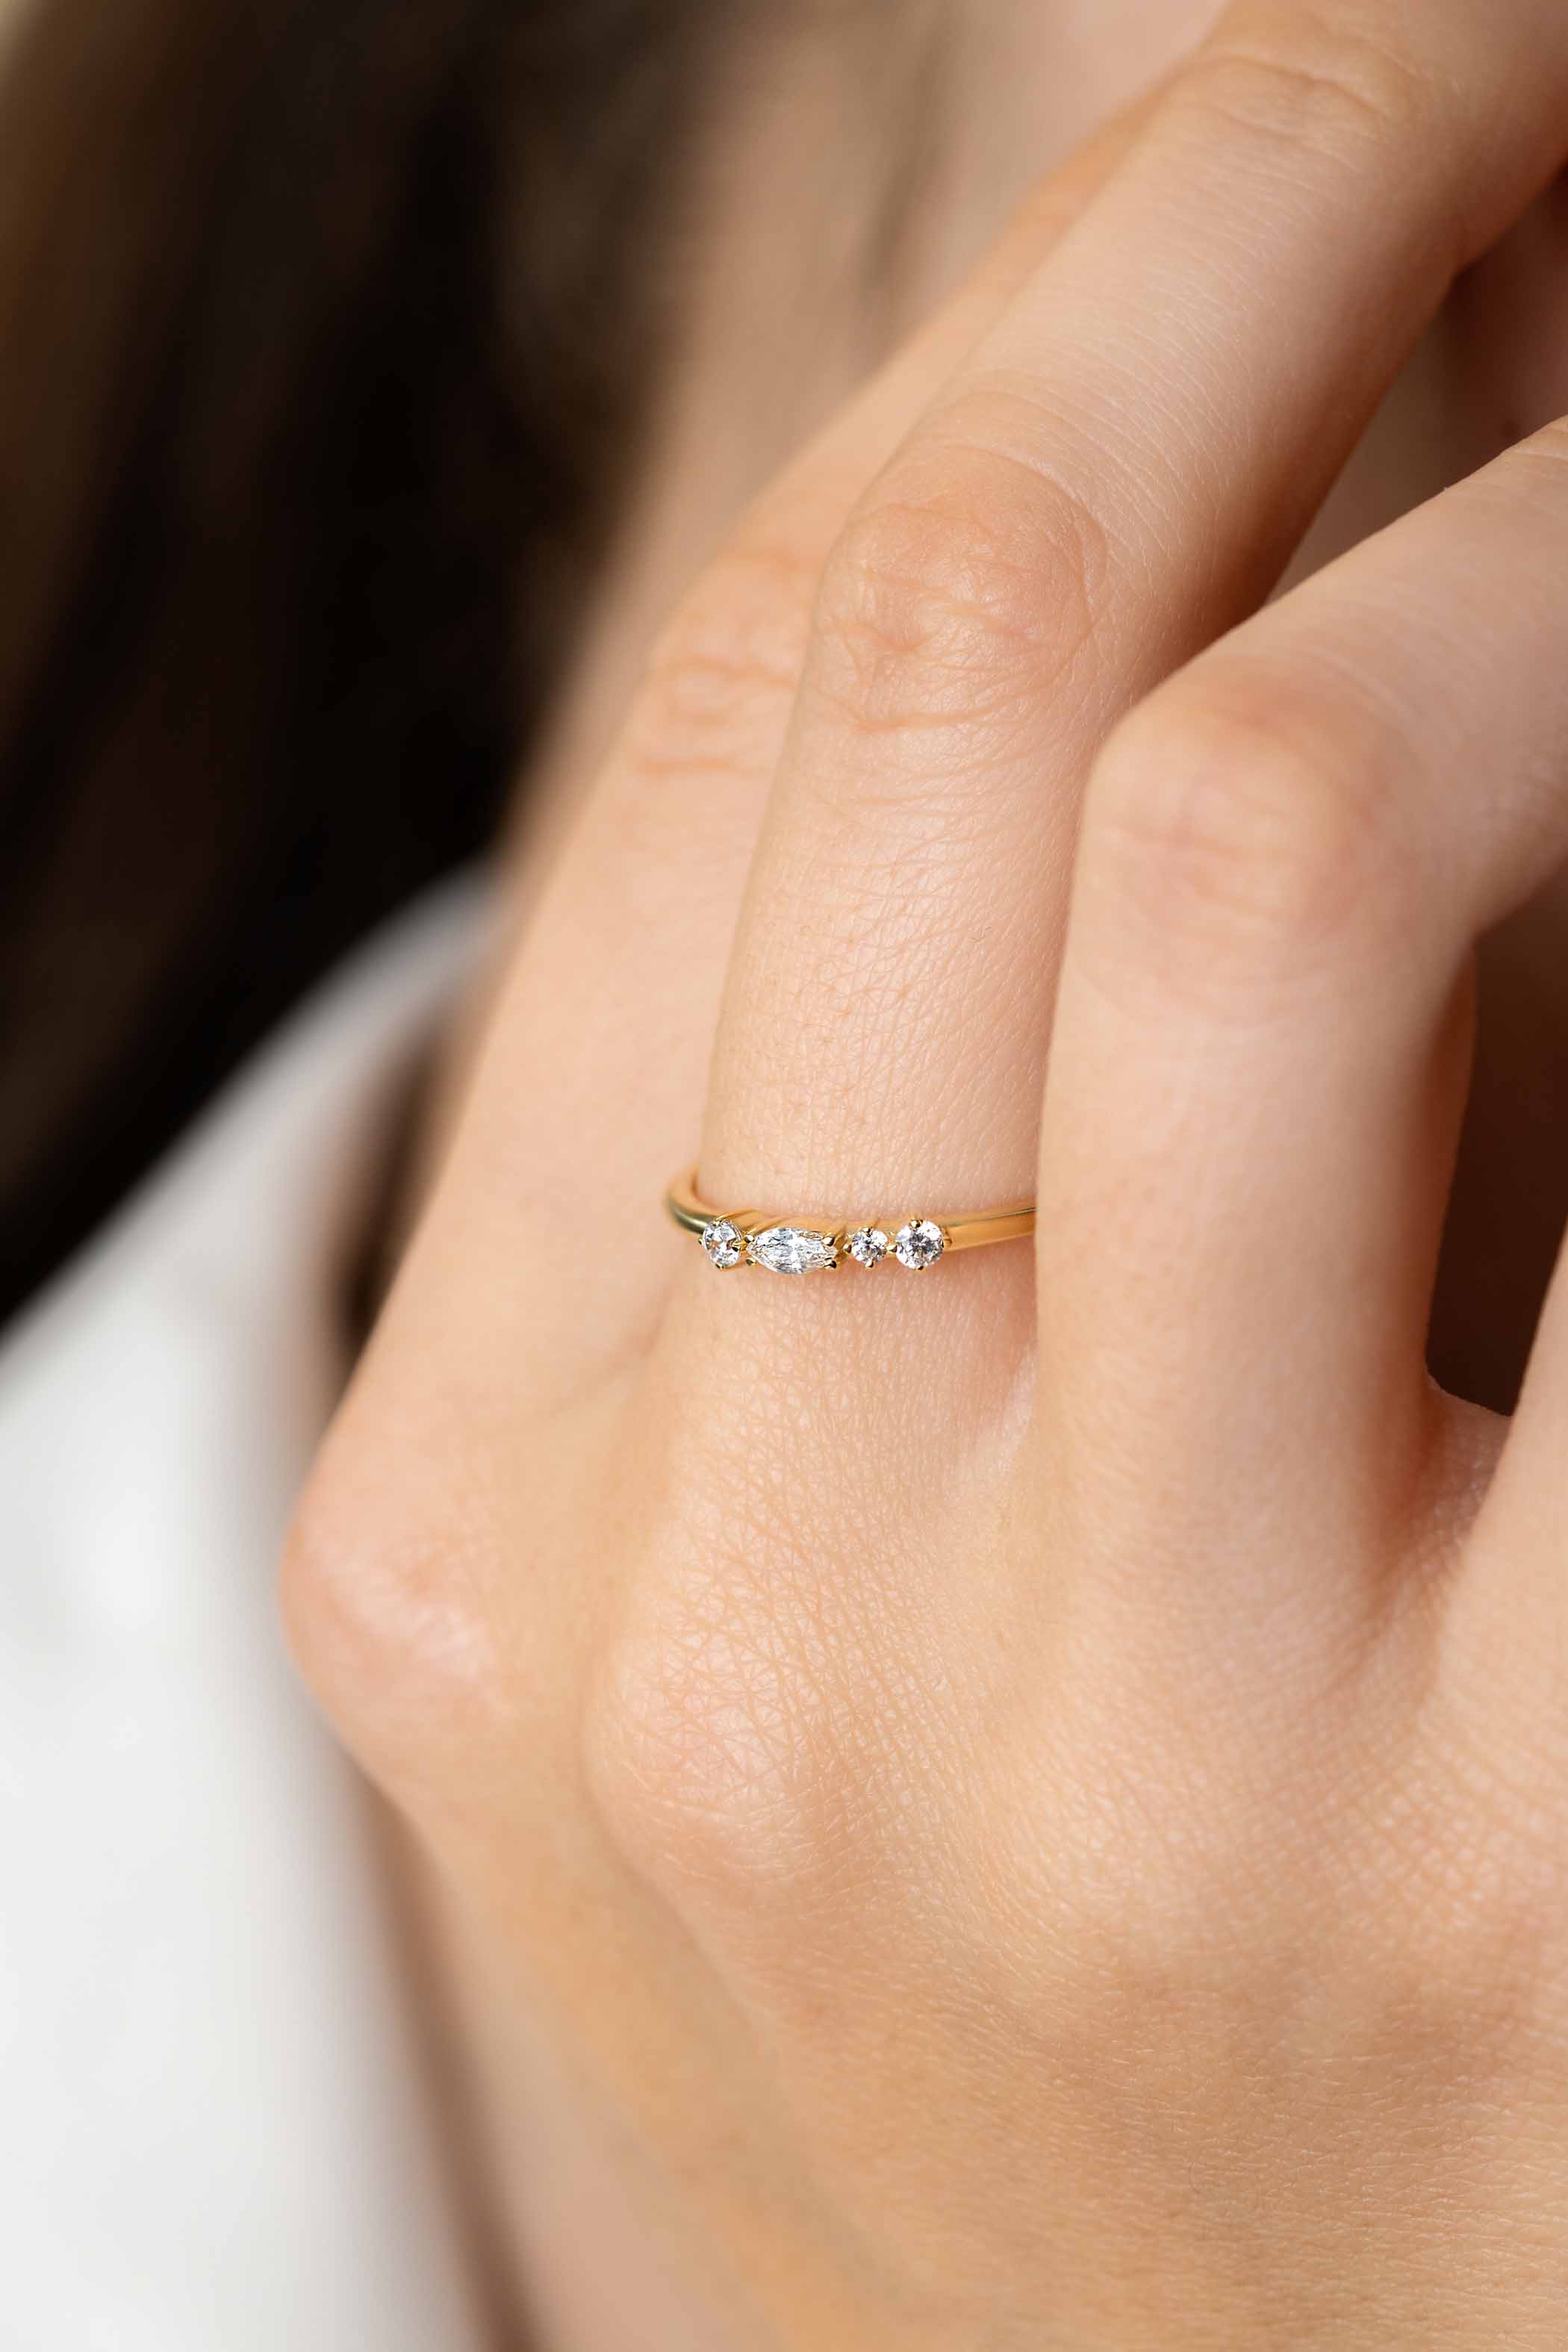 ZINZI Gold 14 krt gouden fantasie ring bezet met vierkante en peervormige witte zirconia's (2,5mm breed) ZGR464
